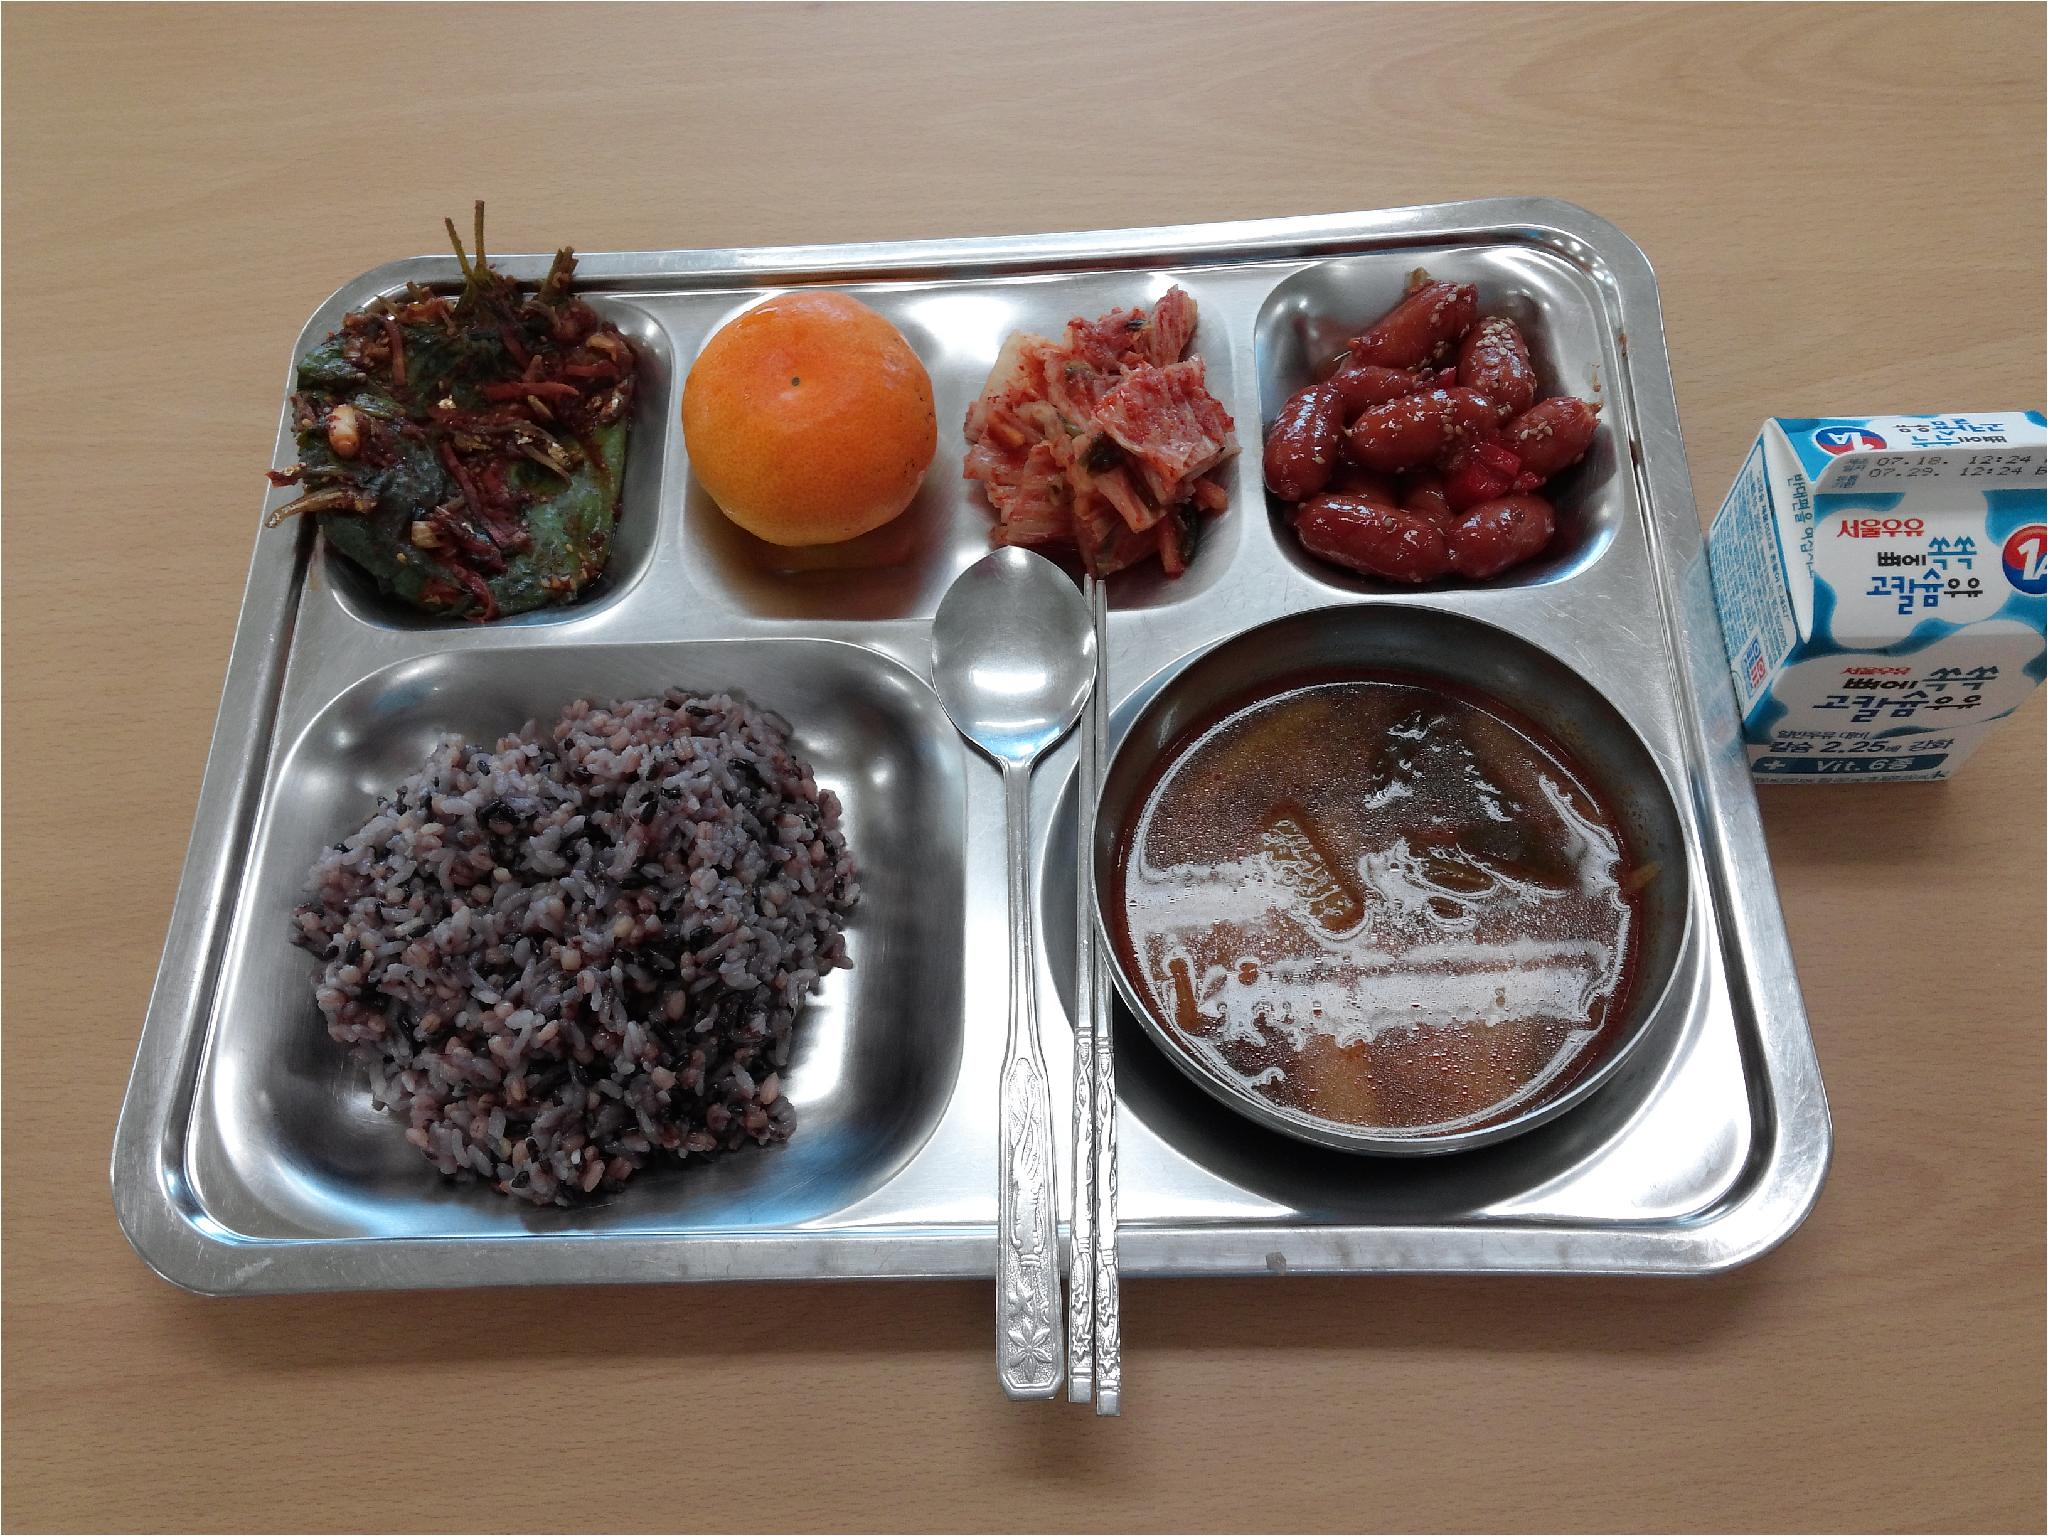 7월 22일 식단 흑미보리밥 쇠고기우거지국 비엔나케첩조림 깻잎멸치찜 귤 김치 우유.